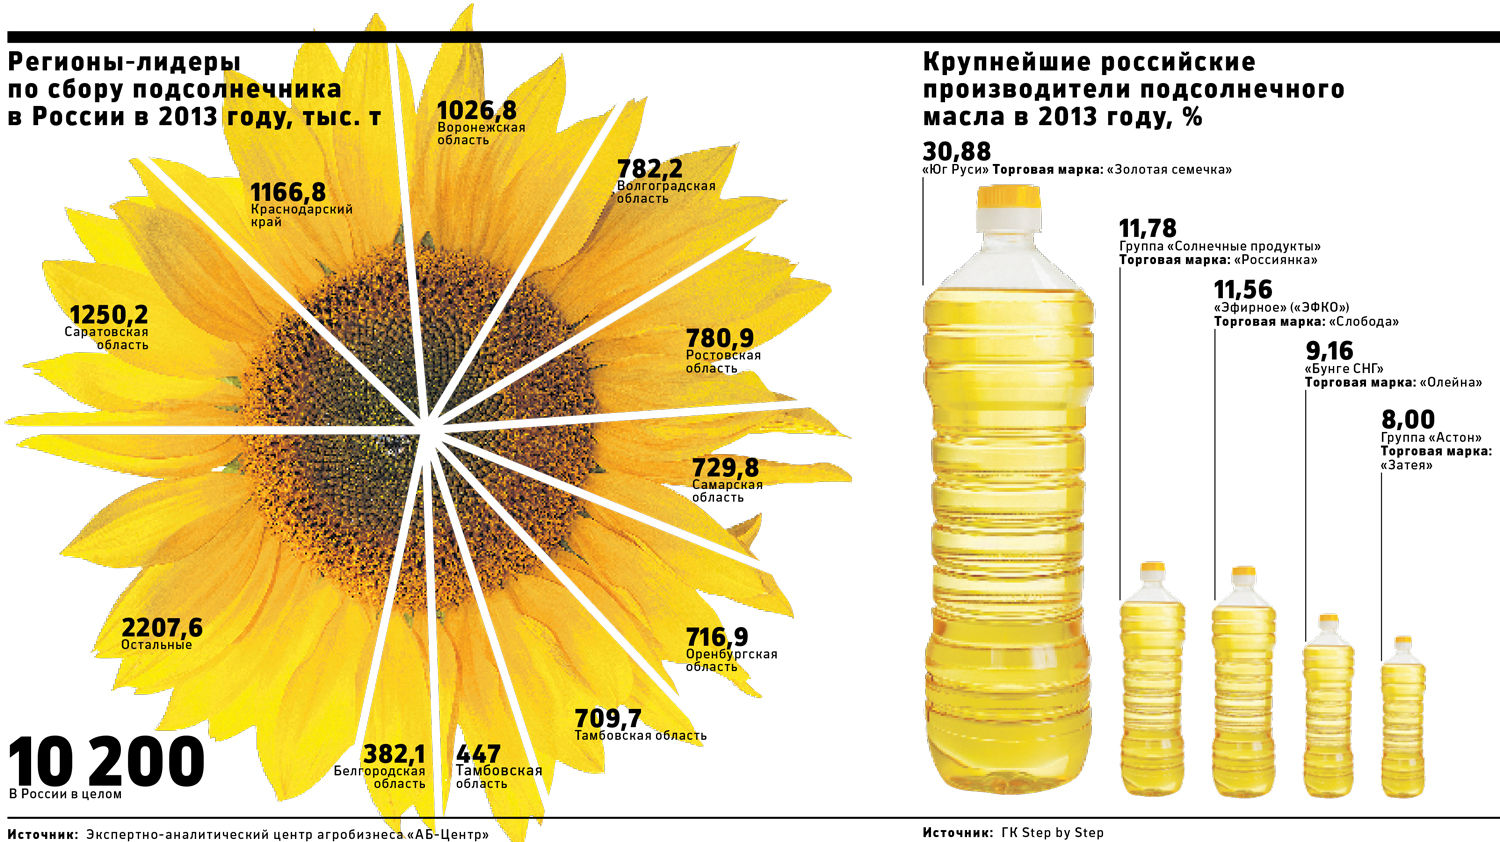 Девальвация рубля и слабый урожай привели к росту цен на масло